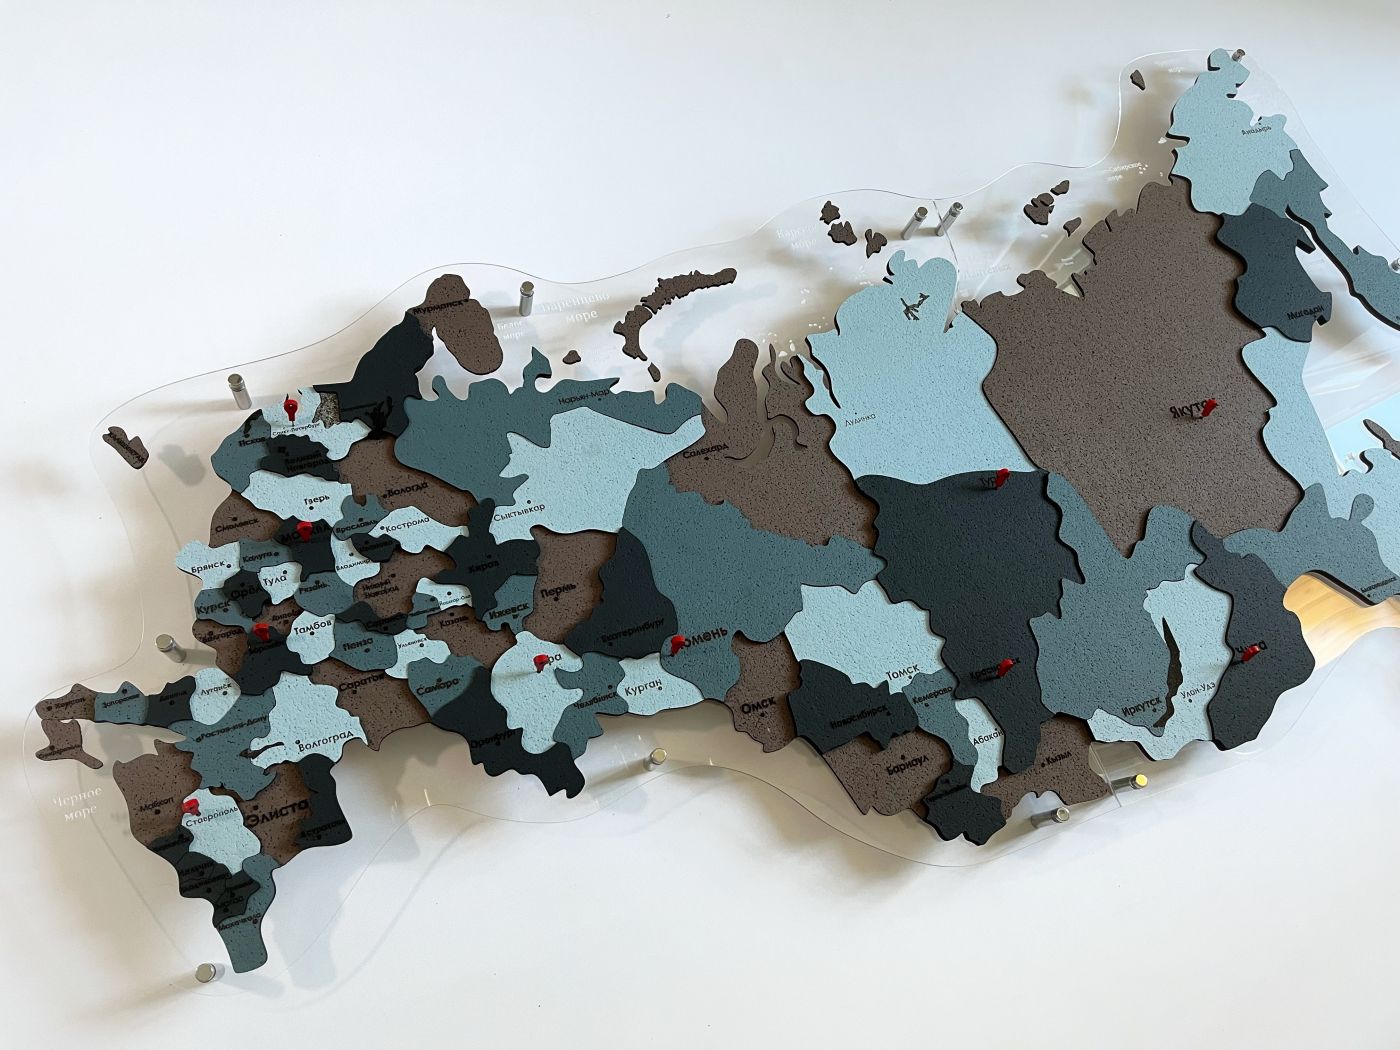 Цвет "Хибины", Карта России ИЗ ПРОБКИ многоуровневая, на подложке из орг.стекла